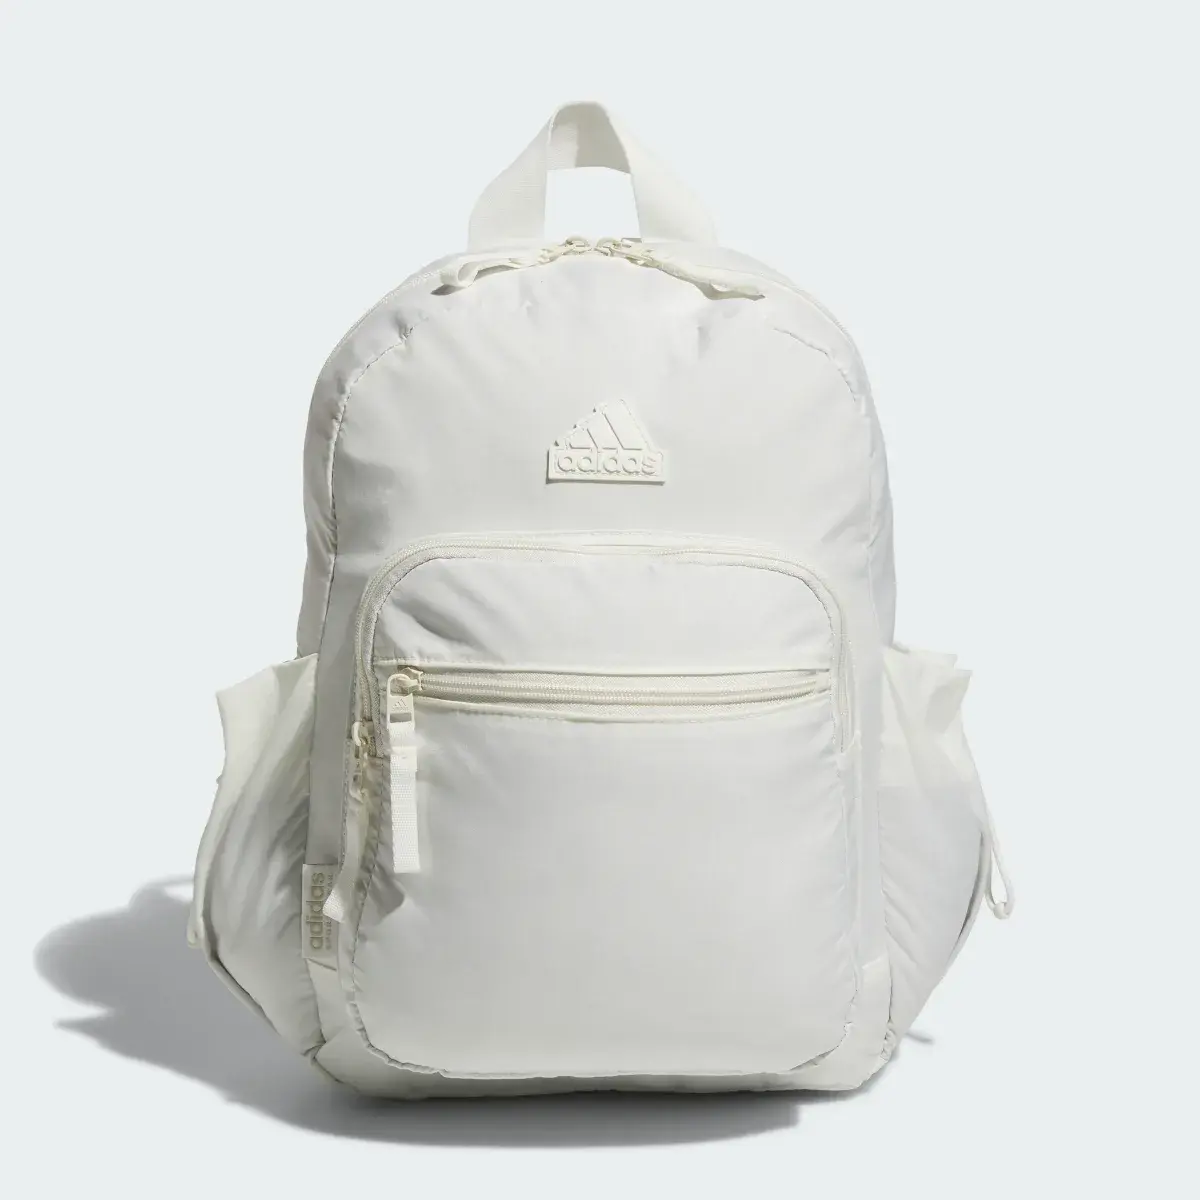 Adidas Weekender Backpack. 2